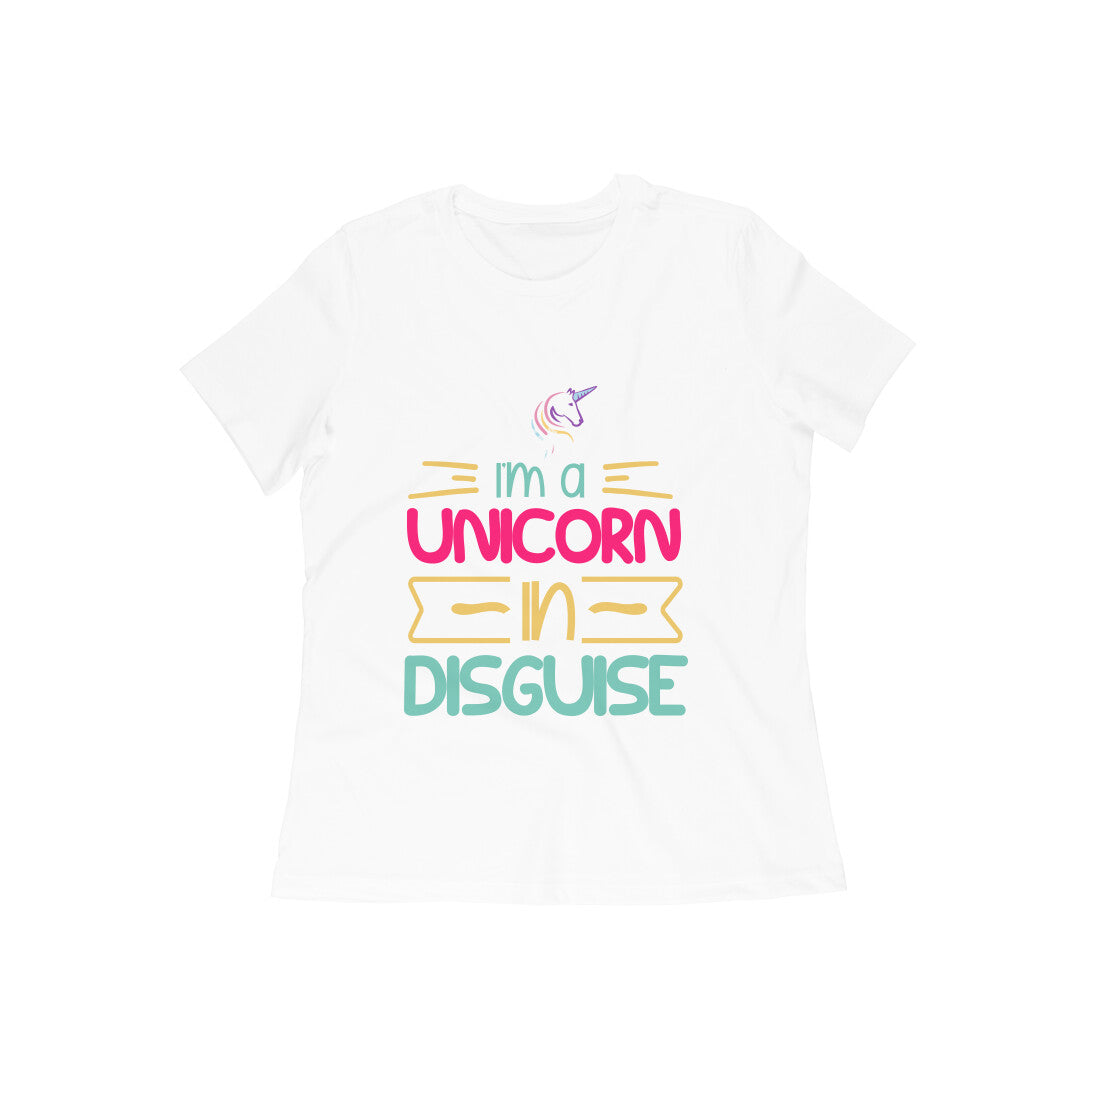 TNH - Women's Round Neck Tshirt - Unicorn Love